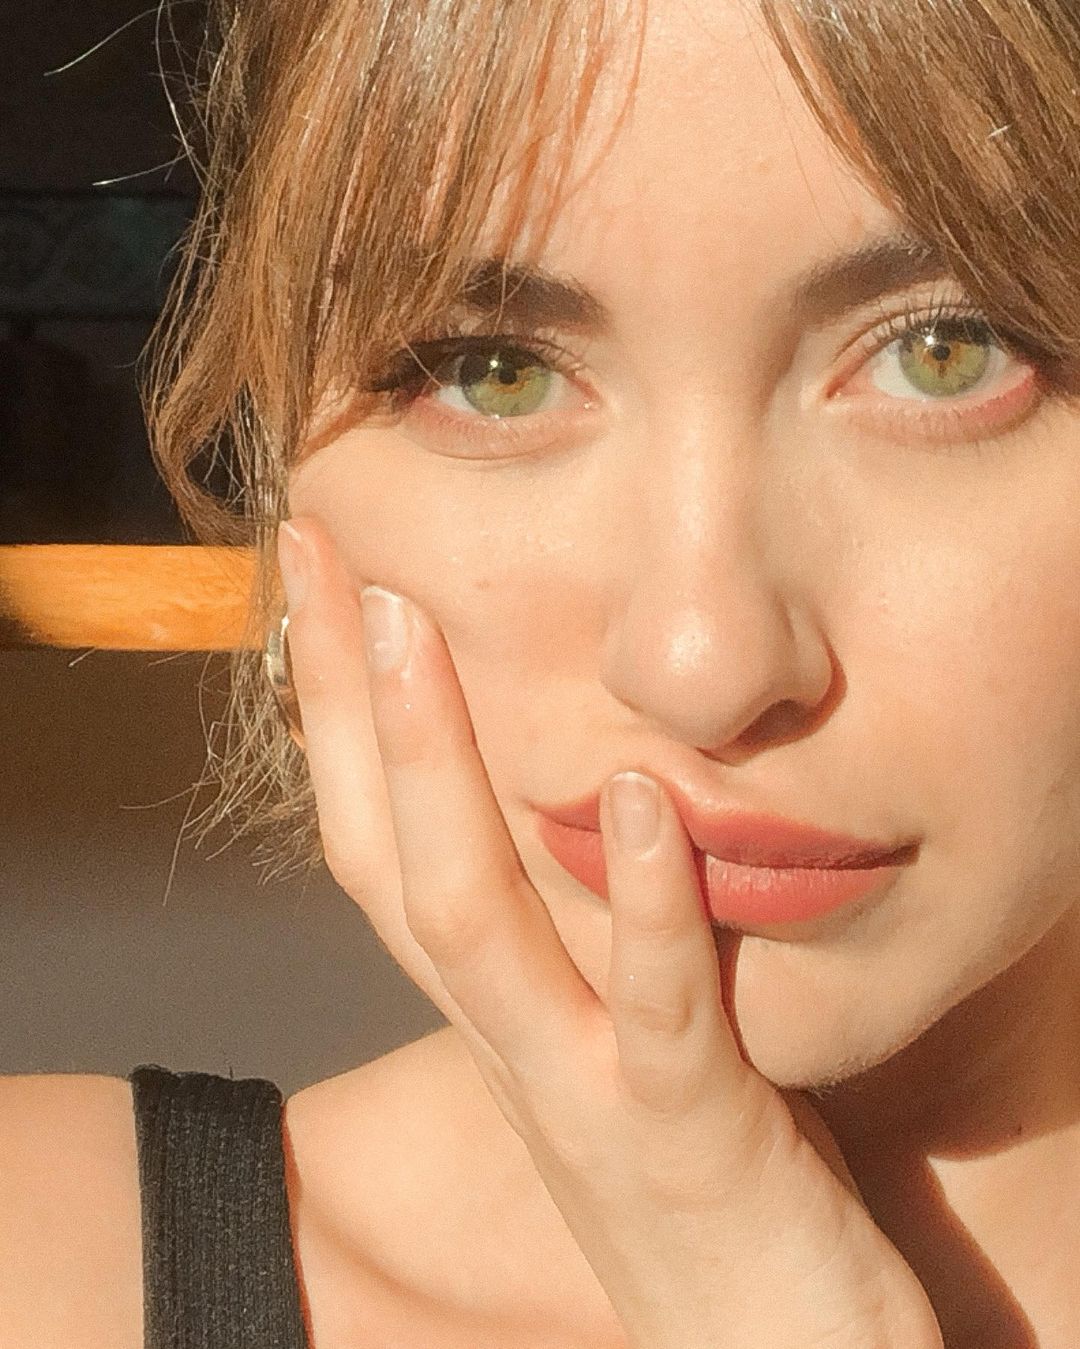 Imagen de un plano corto del rostro de una mujer con la mano sobre la mejilla, ojos verdes y flequillo abierto